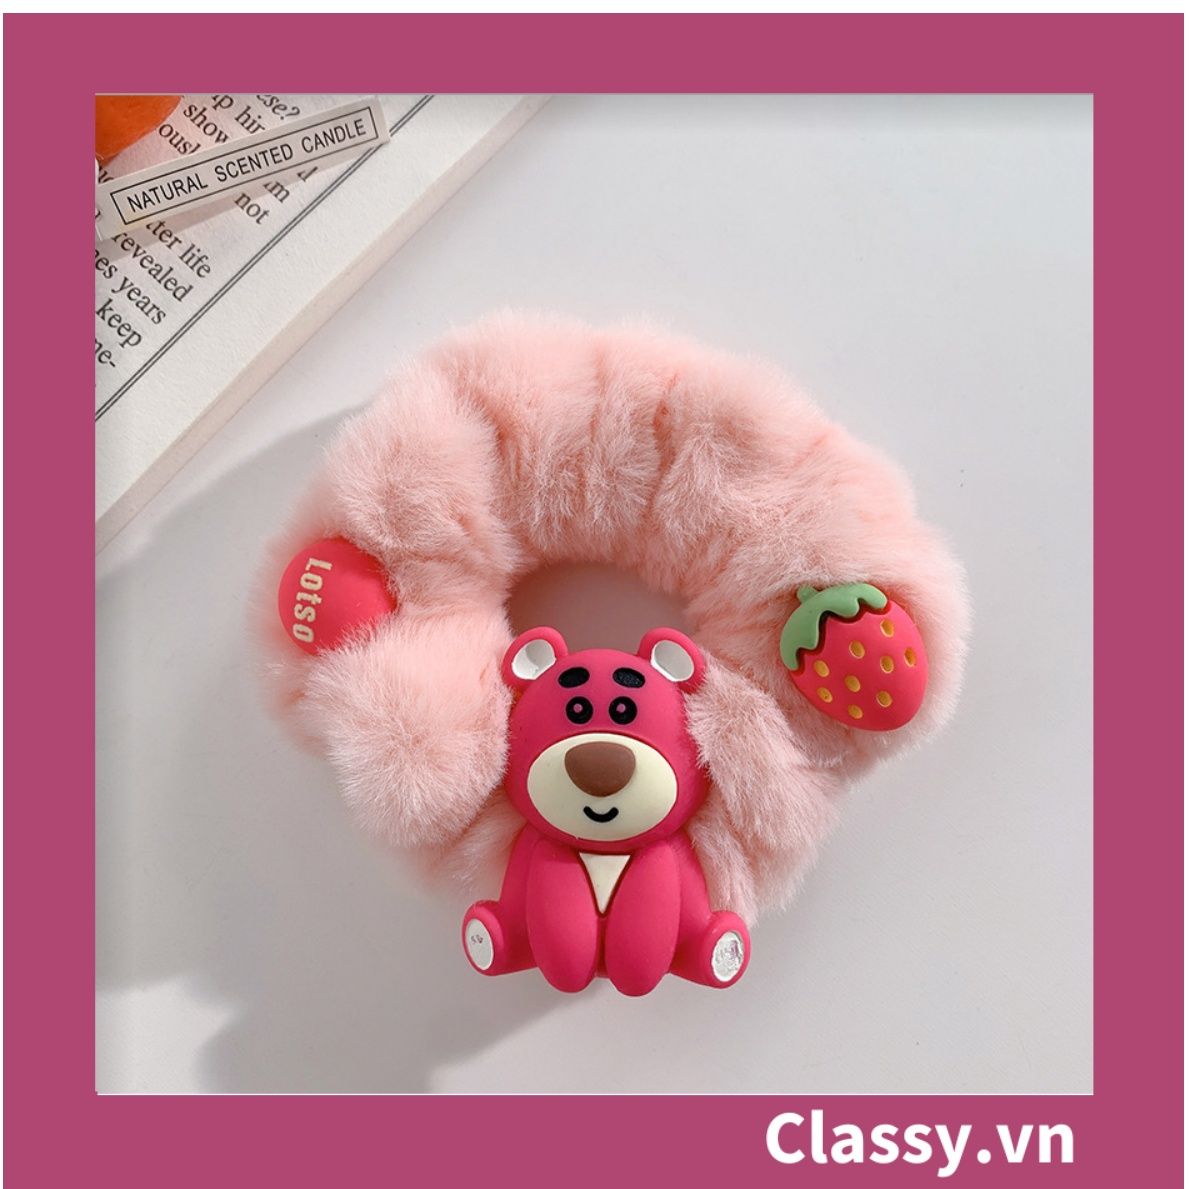  PK799 Bộ sưu tập dây cột tóc băng đô và kẹp tóc màu hồng tía, in hình gấu Teddy cute ngộ nghĩnh 